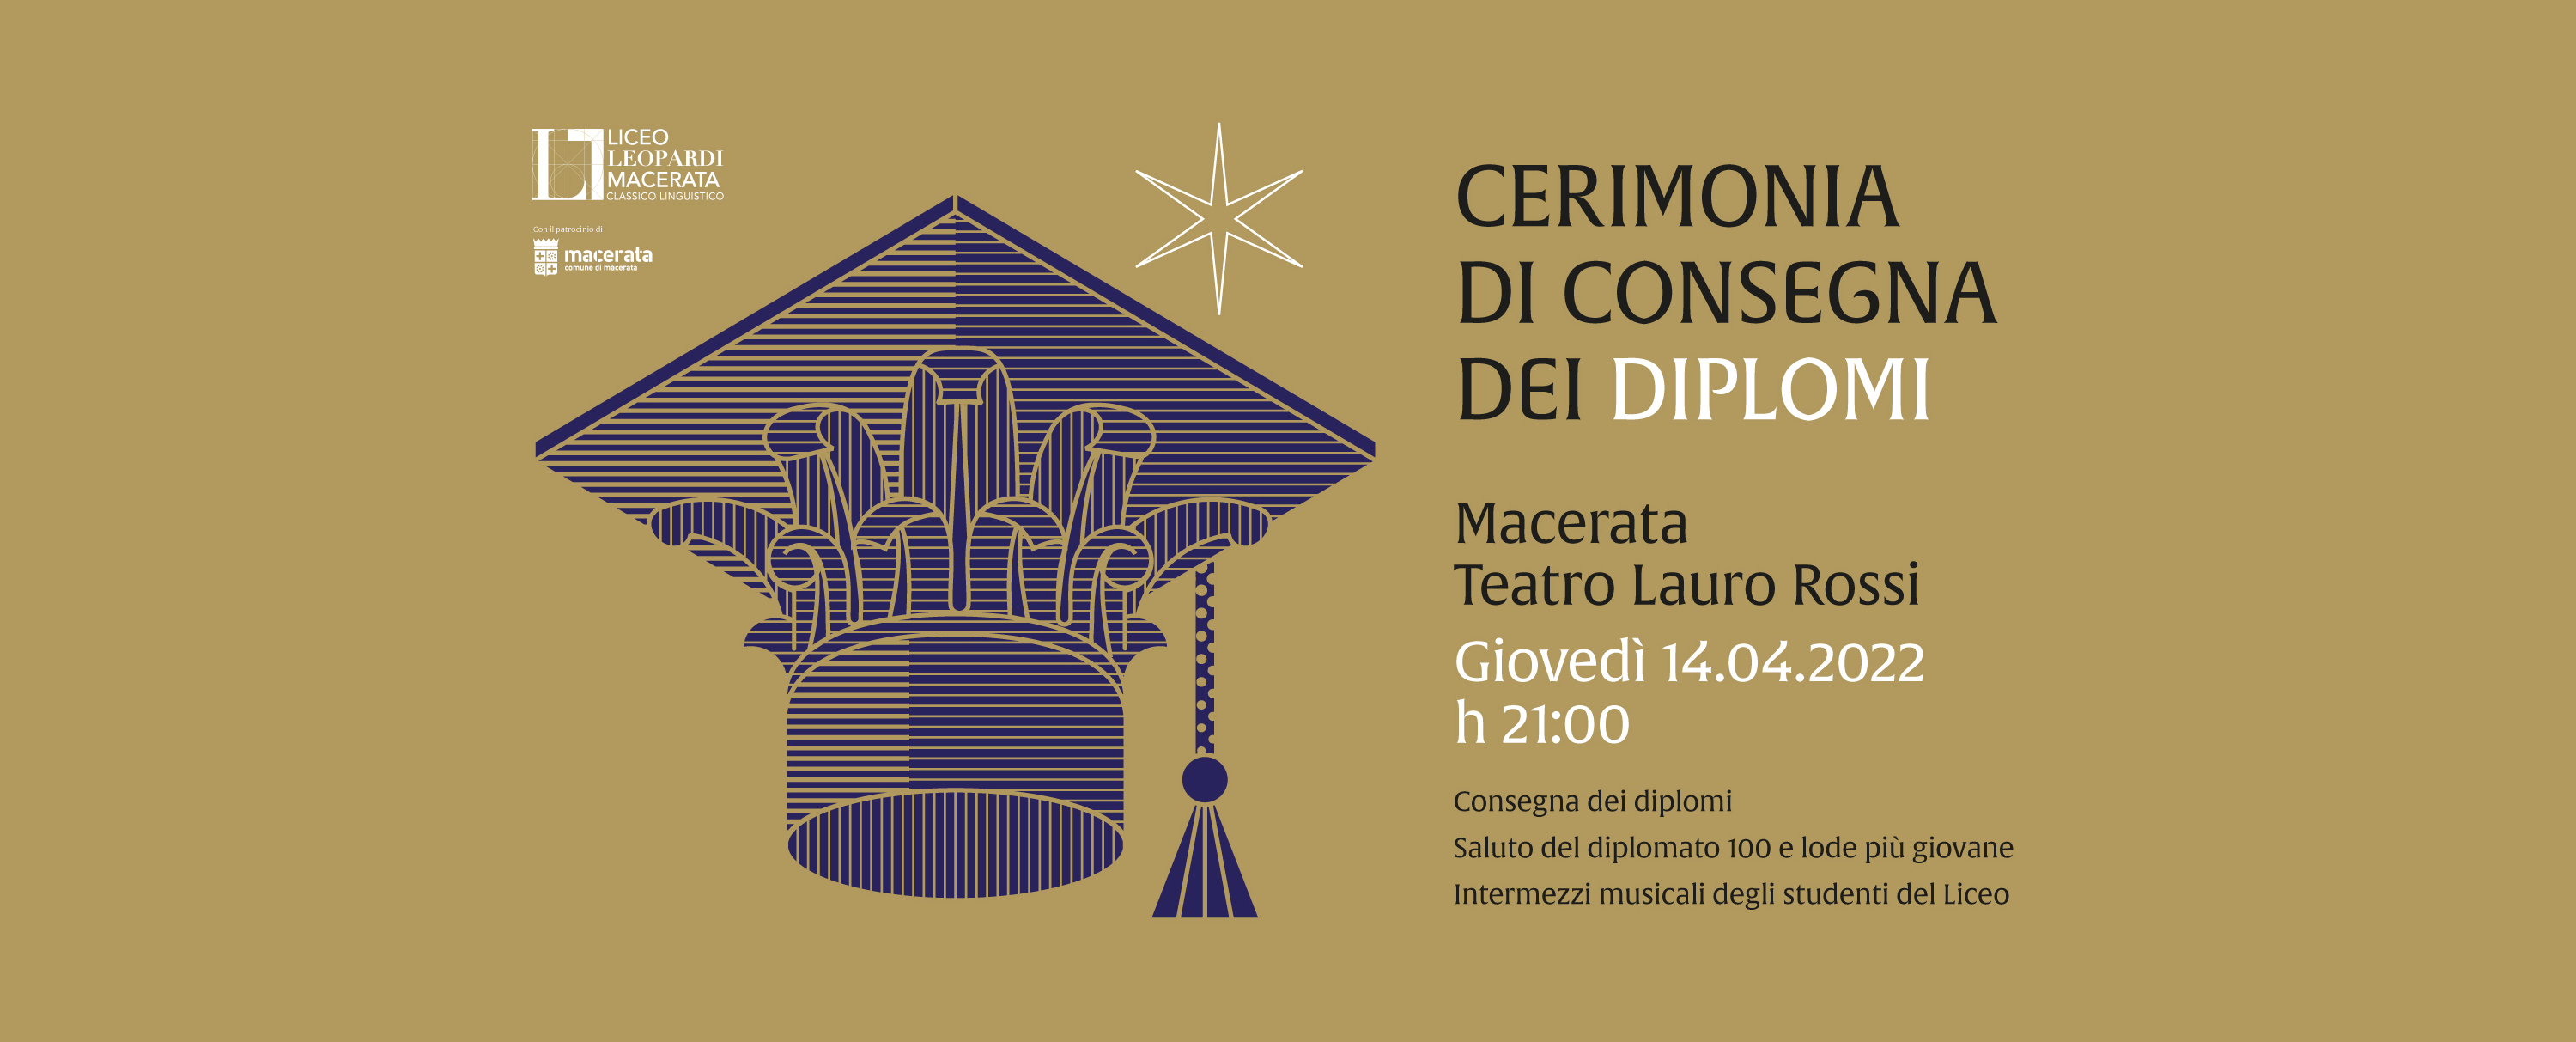 Cerimonia di consegna dei dipolomi, 14 aprile - Liceo Statale G. Leopardi Macerata